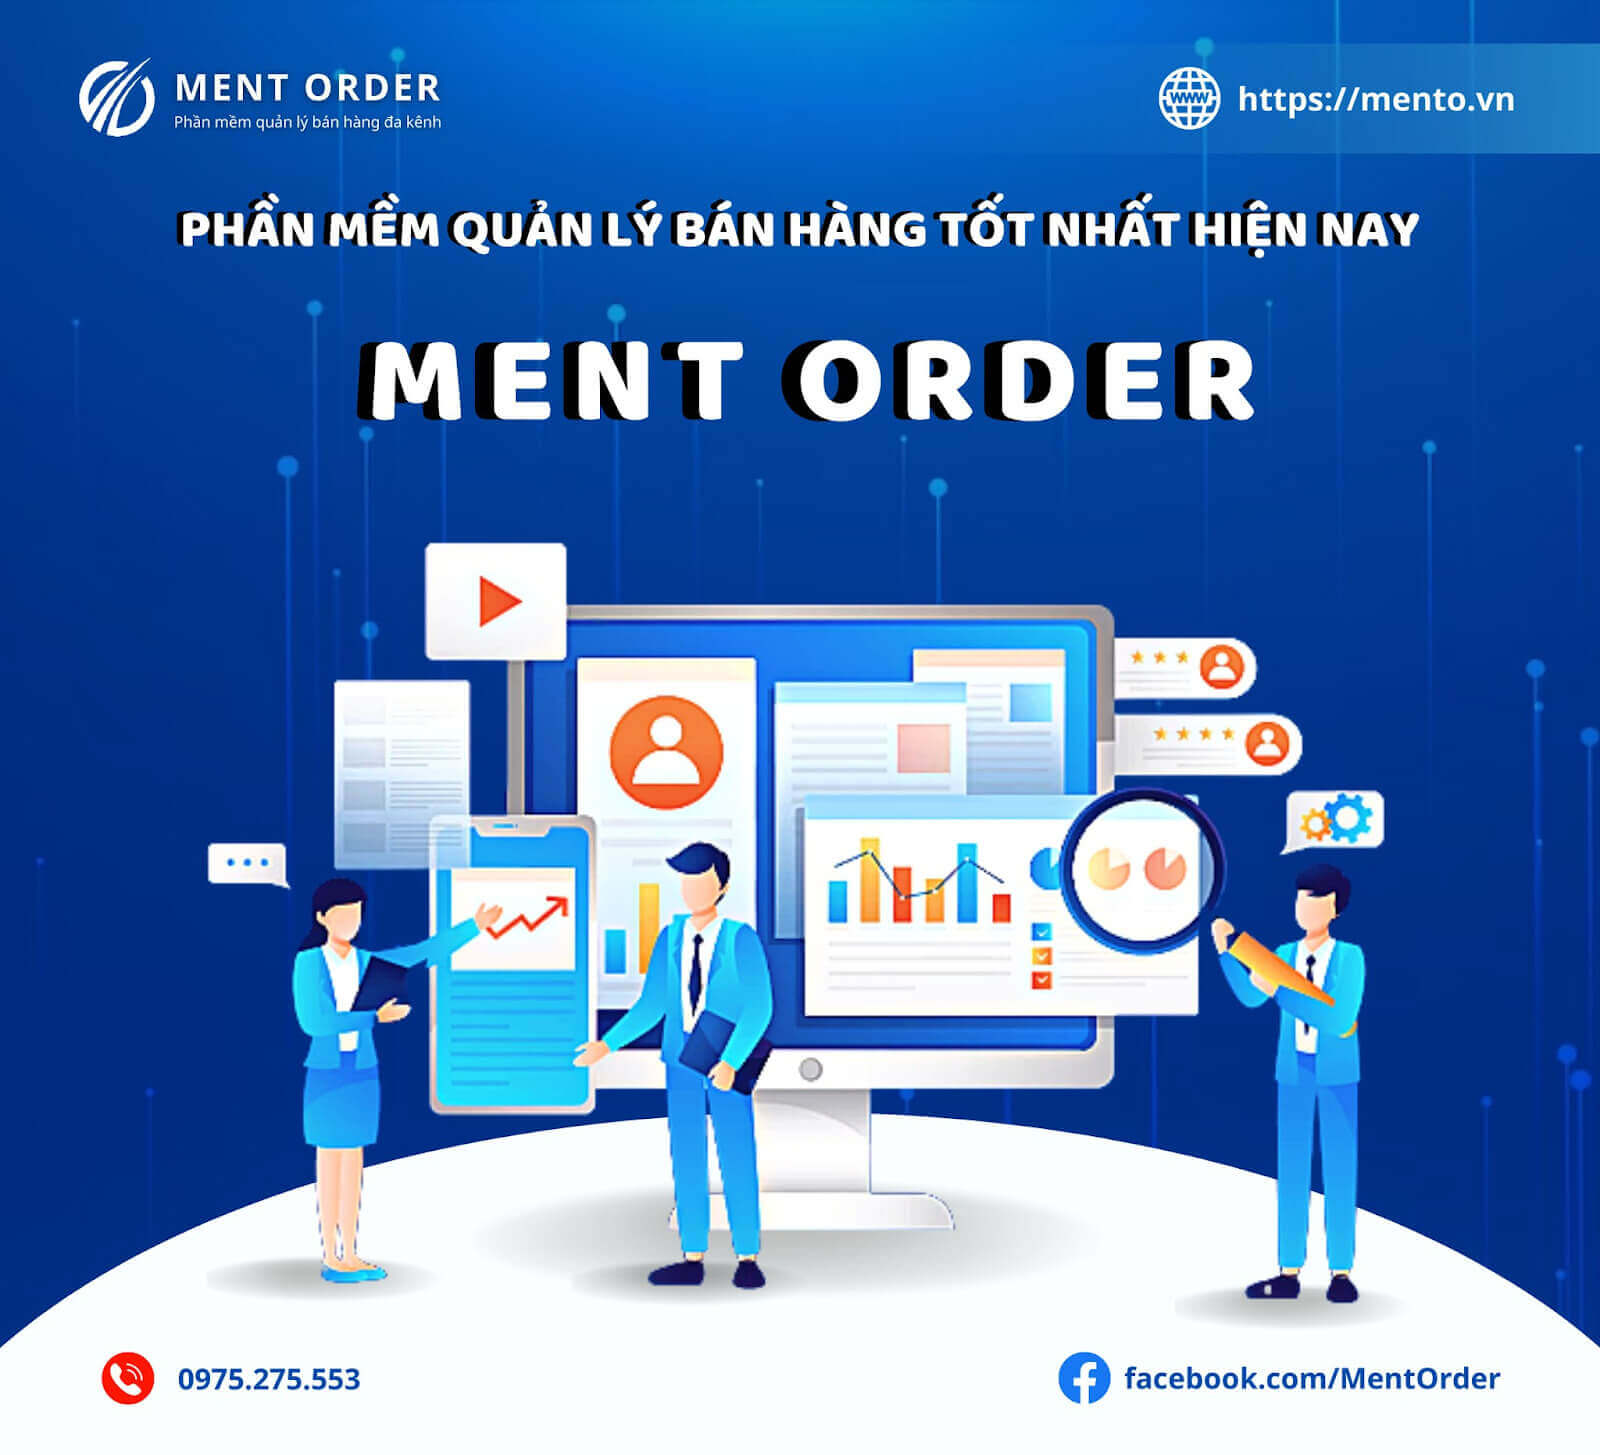 Ment Order - Phần mềm quản lý bán hàng tốt nhất hiện nay